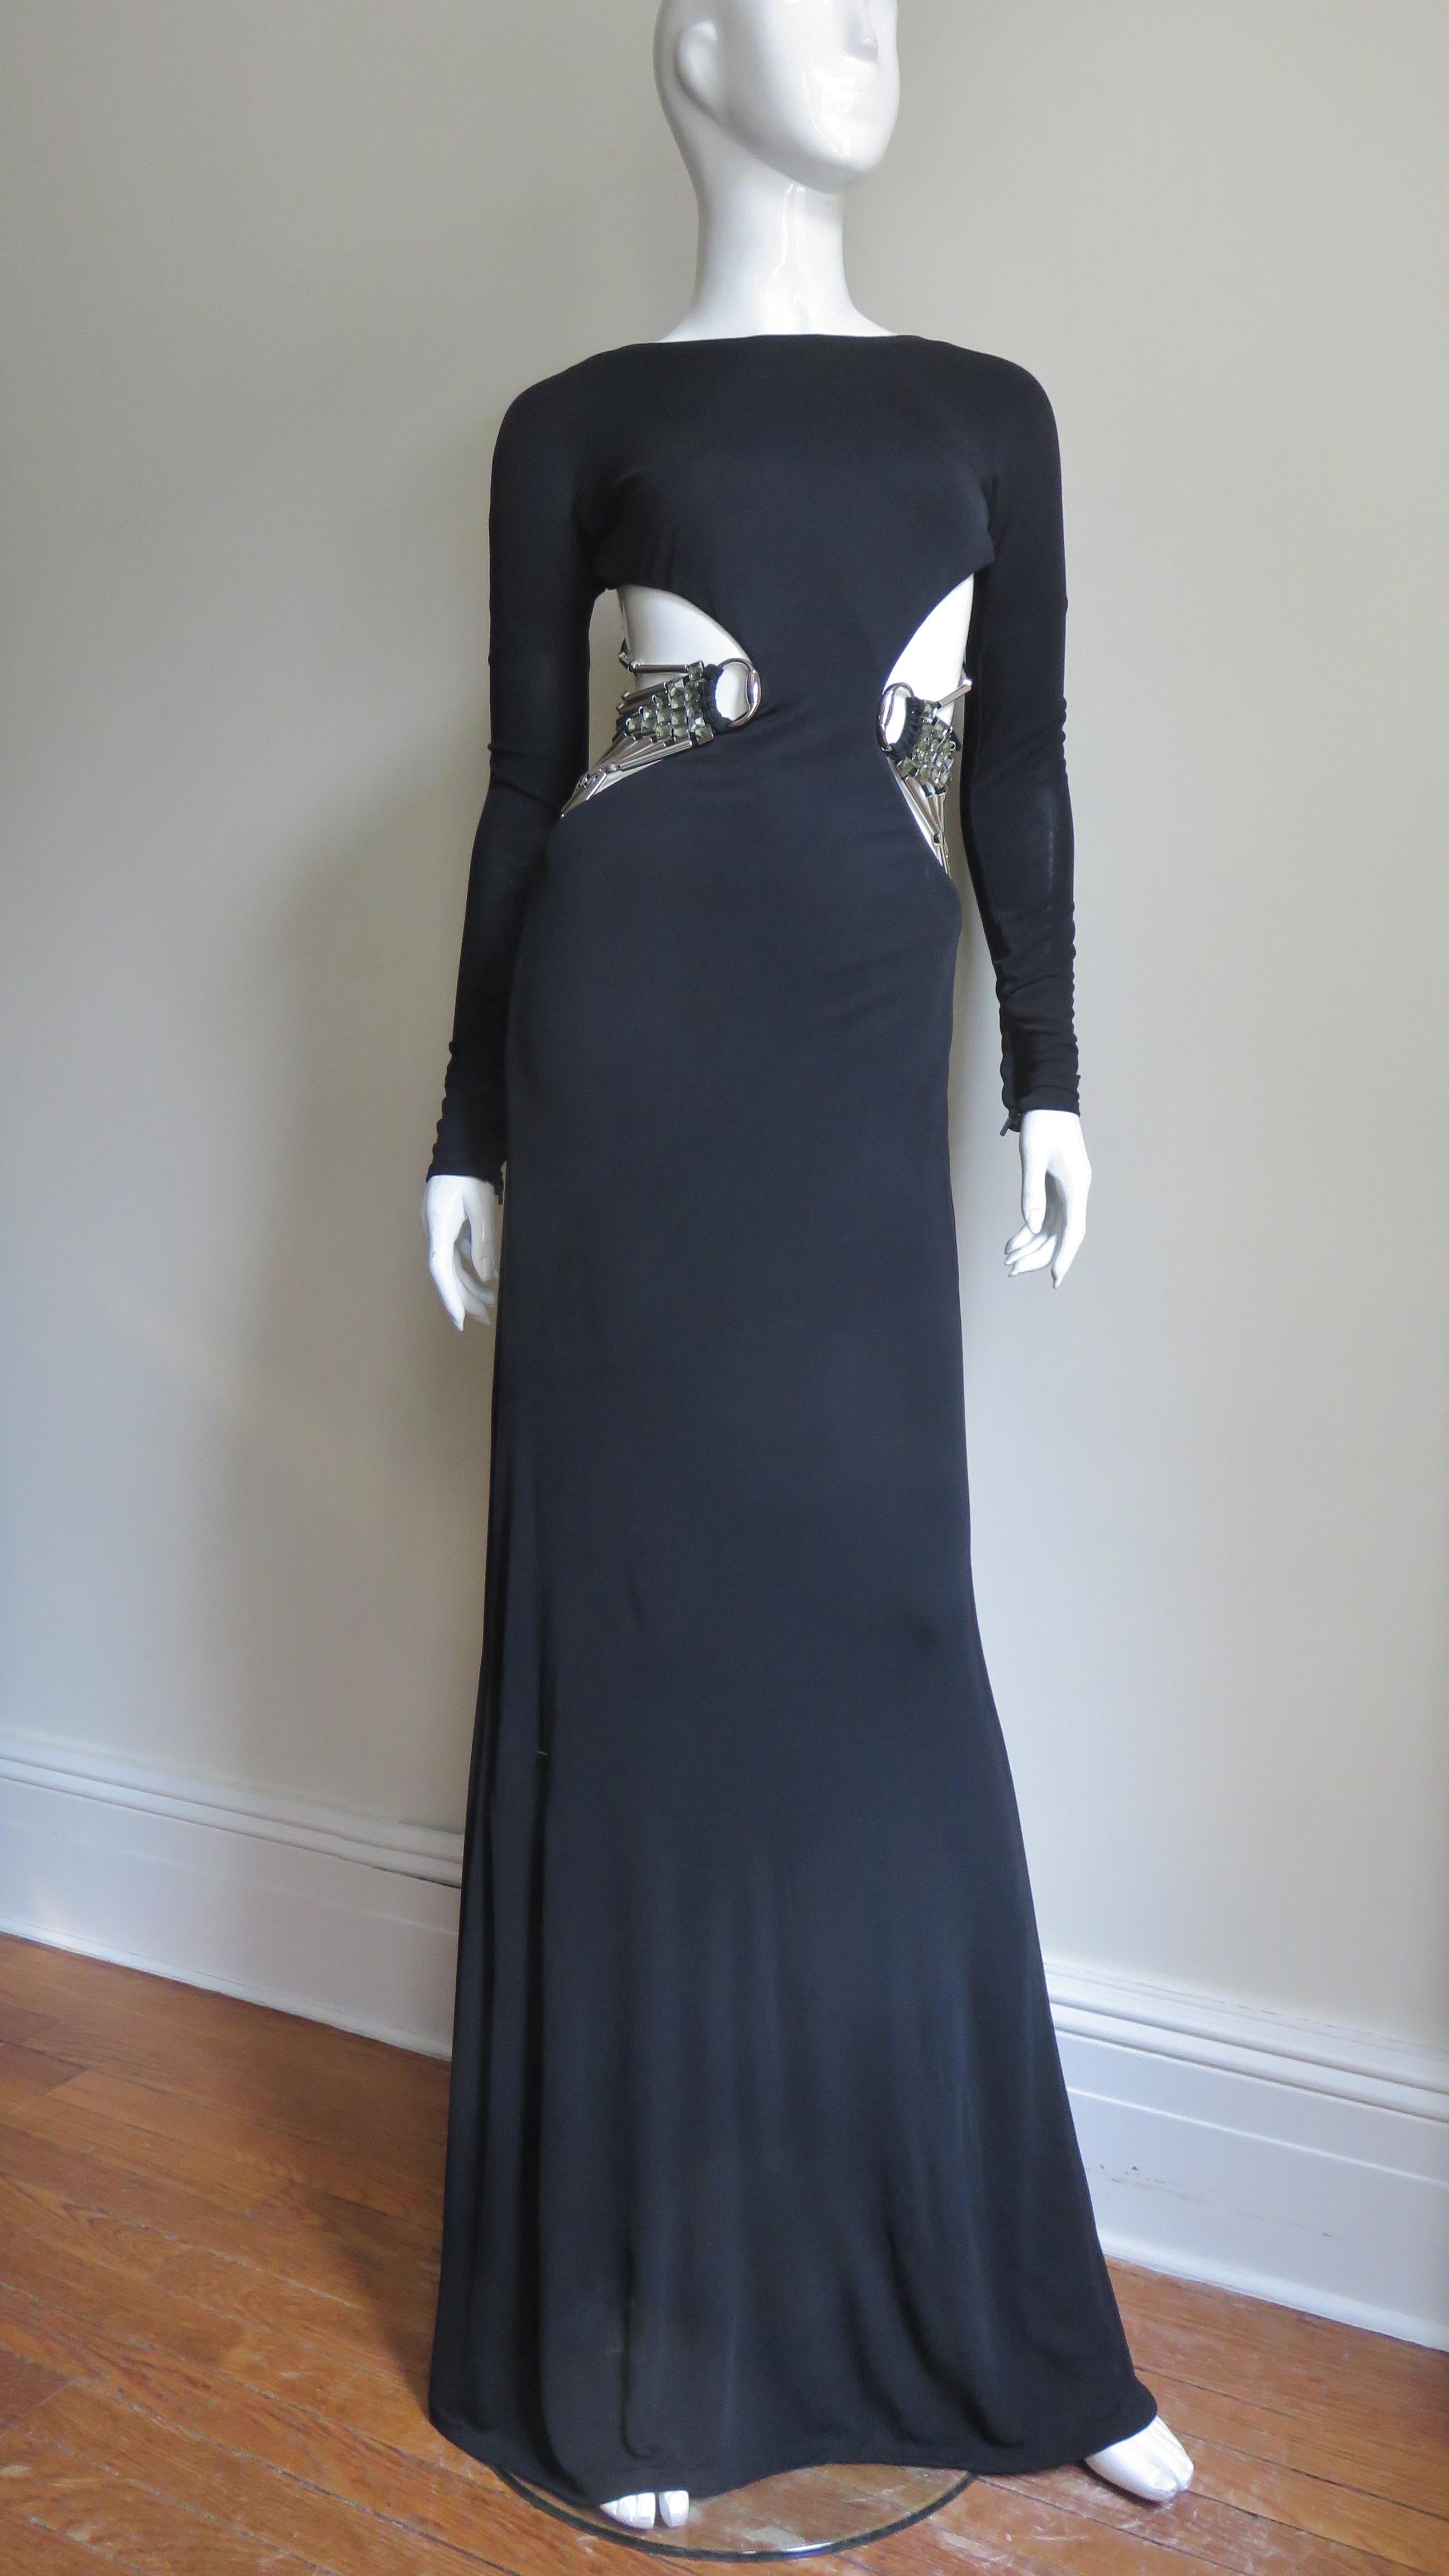 Une magnifique robe en maille de soie noire de la collection S/S 2010 de Gucci, portée par Linda Evangelista en couverture de Vogue.  Elle est ajustée, possède des manches longues avec poignets zippés et de fabuleuses découpes latérales allant du